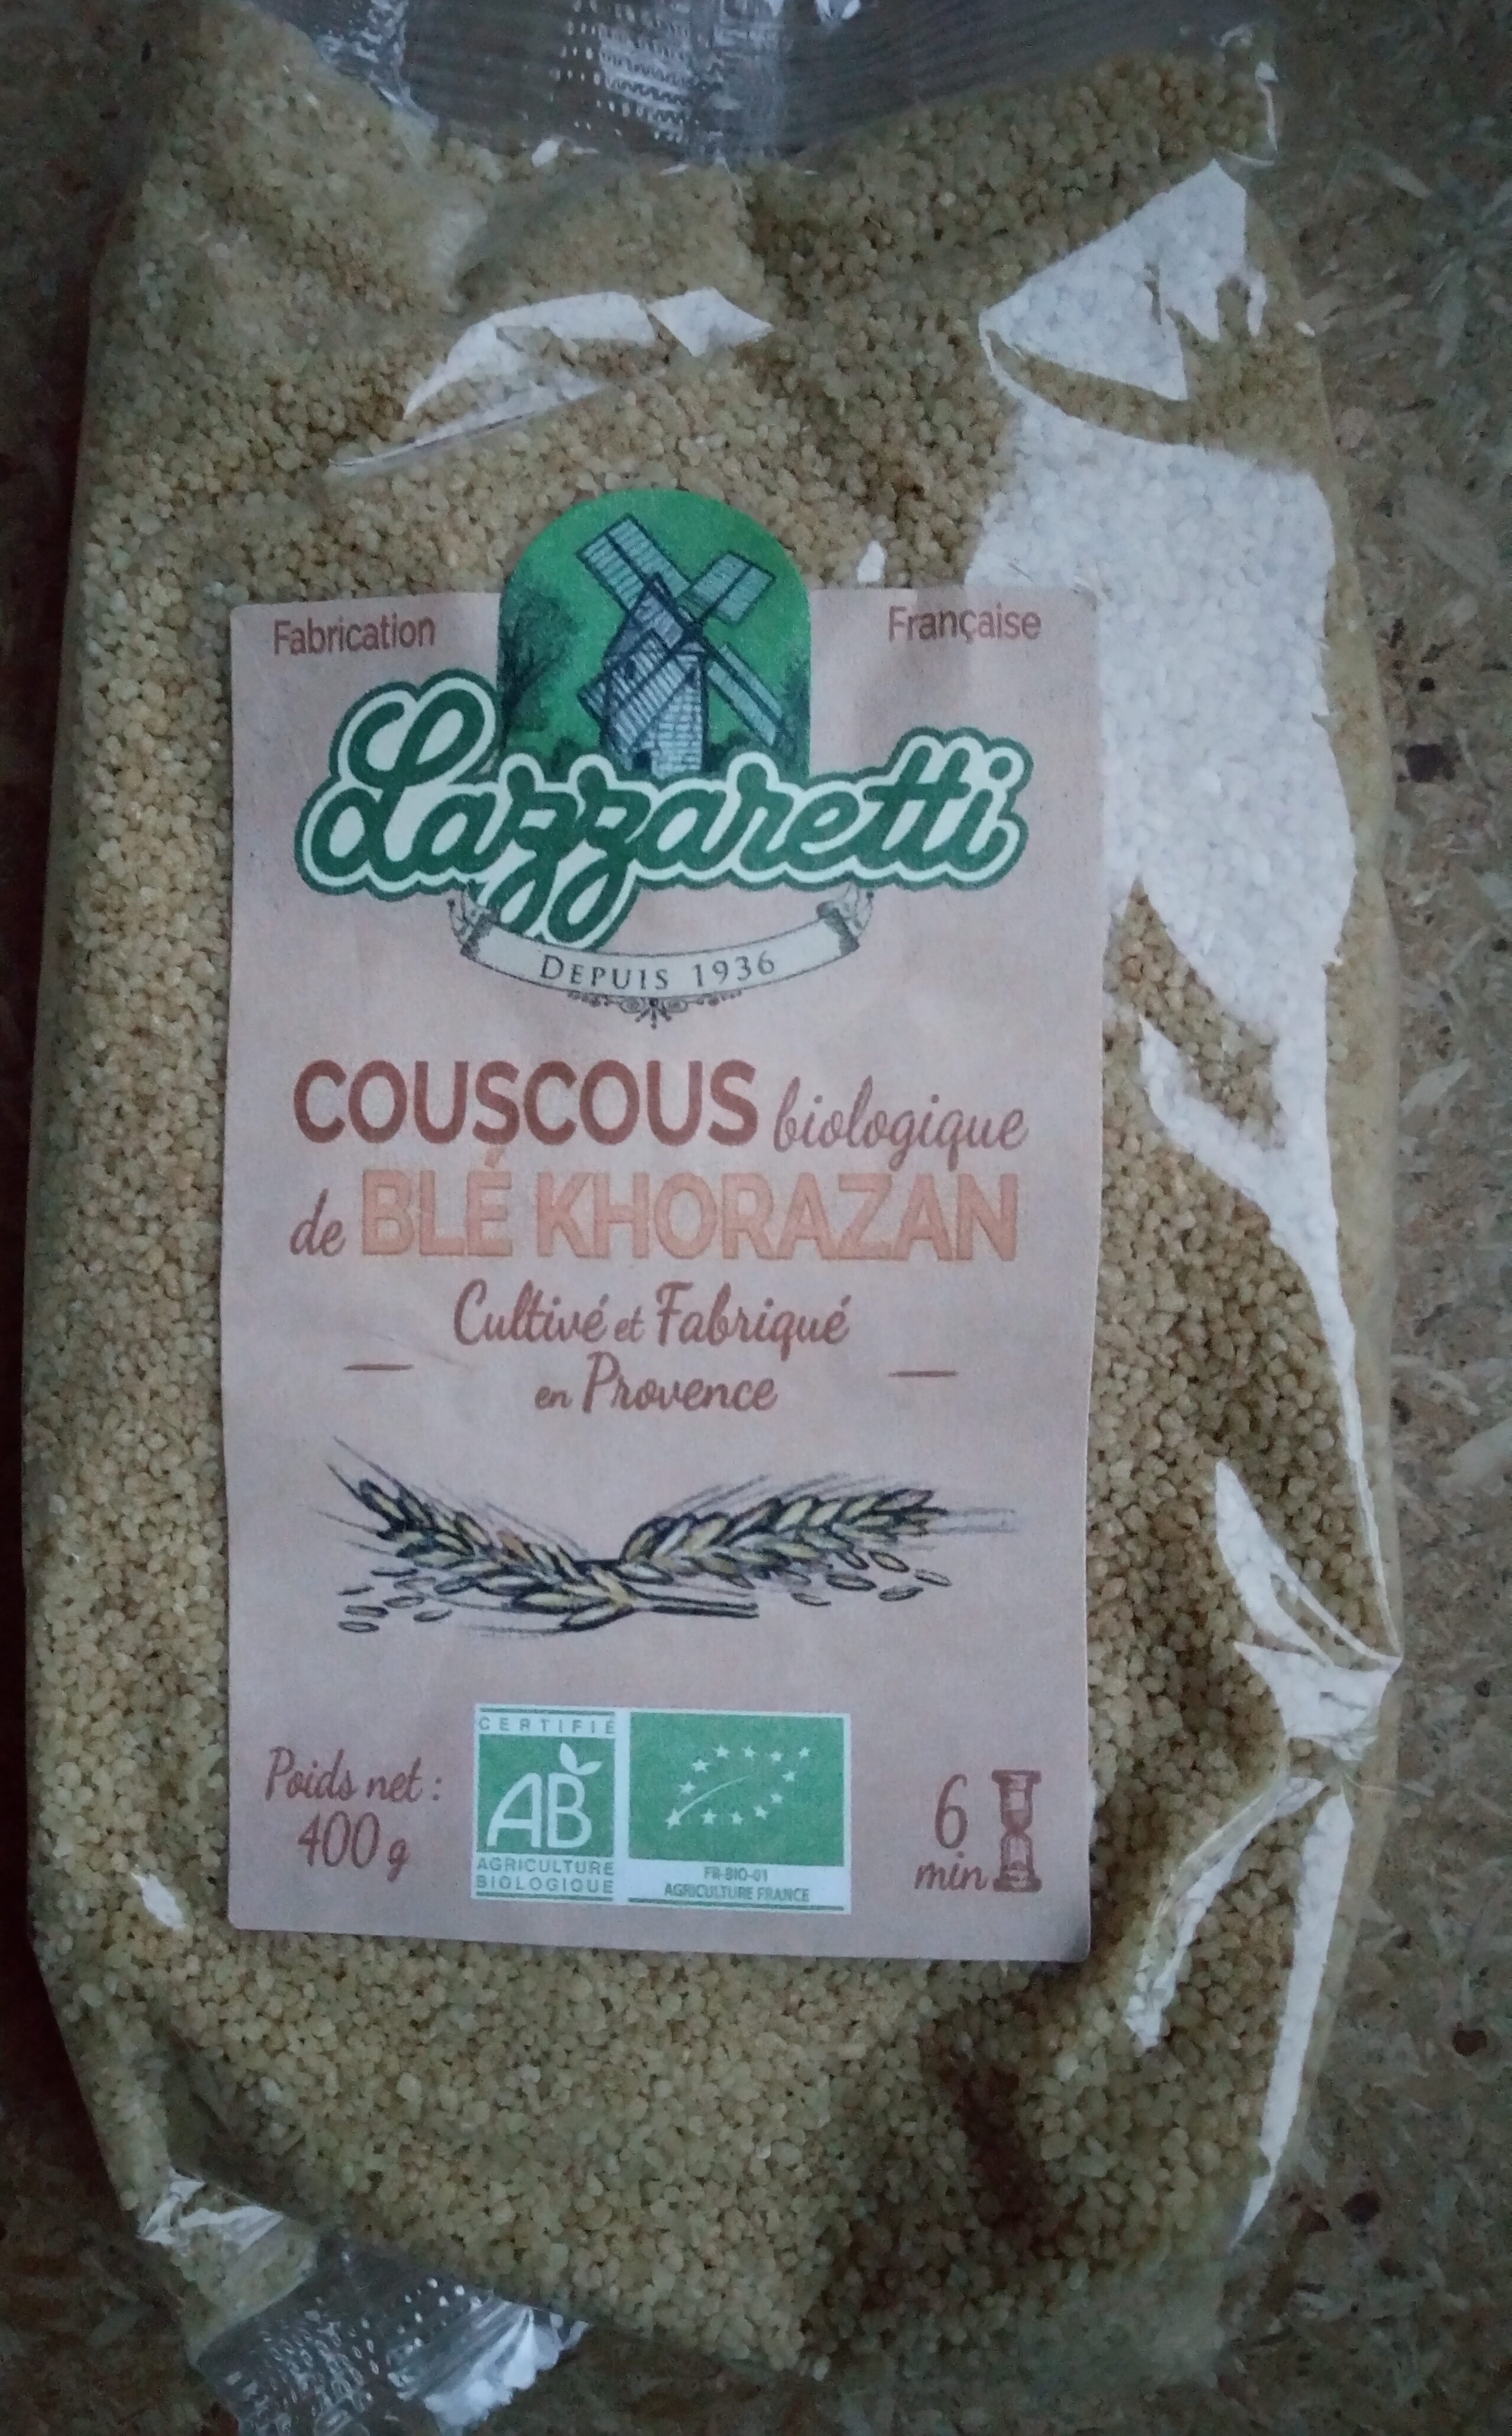 Couscous biologique de blé khorazan - Product - fr